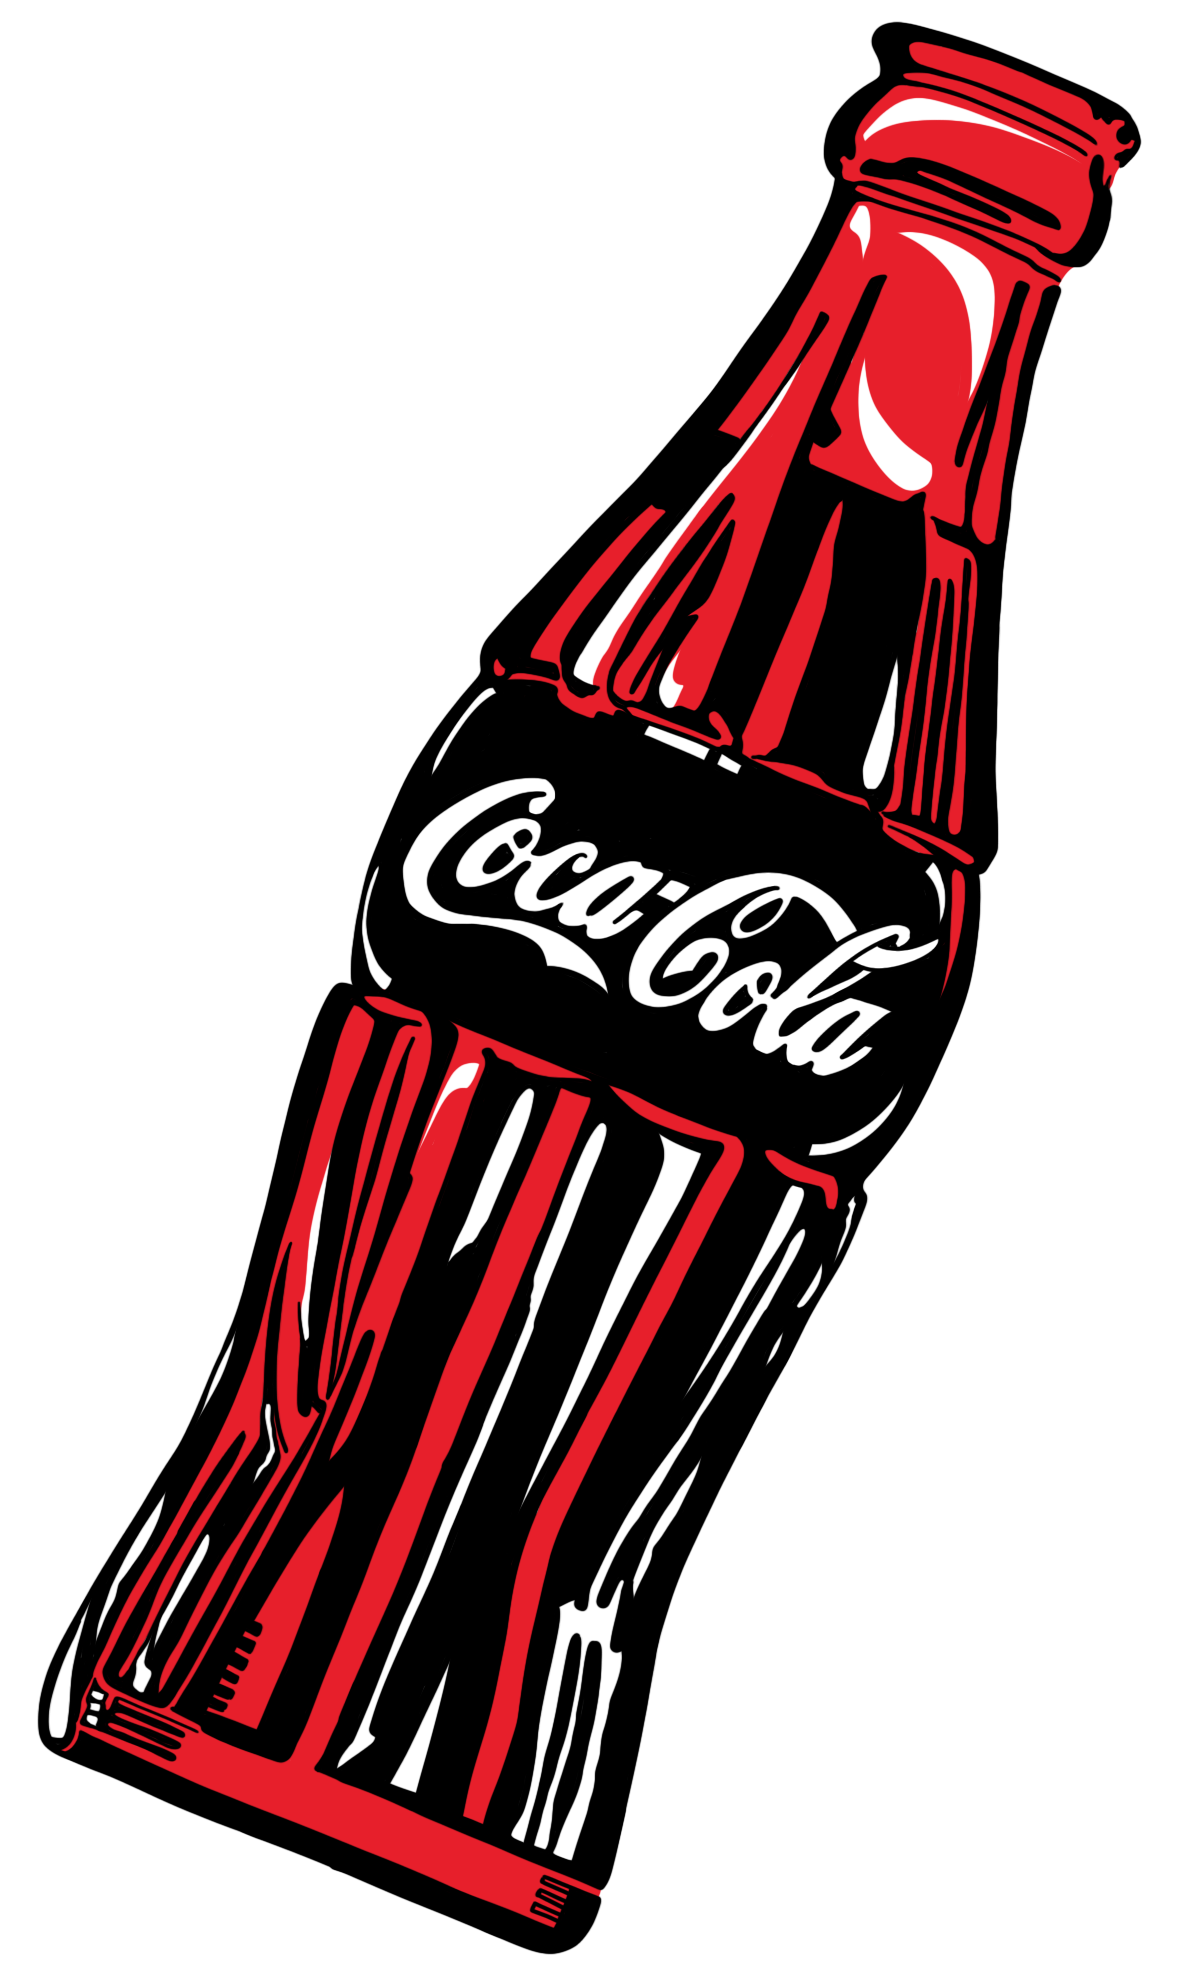 摩登百年·精彩“瓶”现 可口可乐弧形瓶艺术设计大赛五月启动 - 设计在线